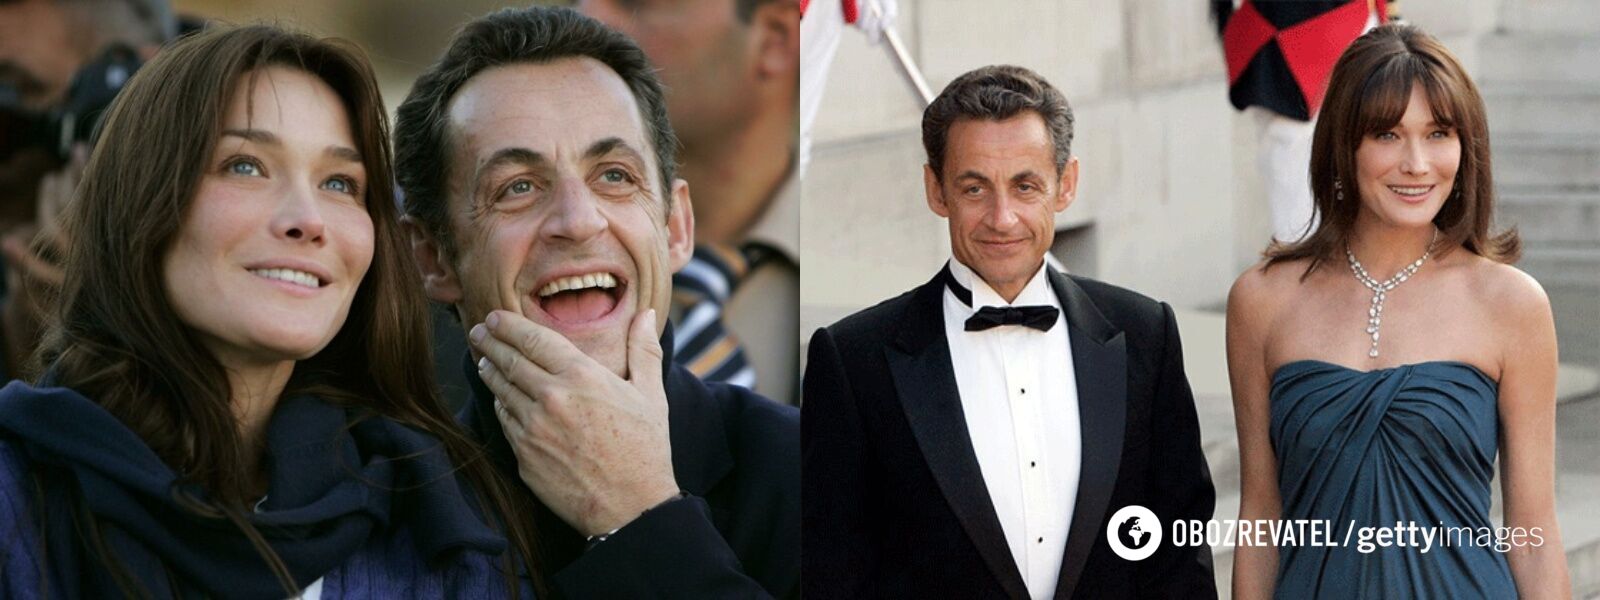 Карла Бруни и Николя Саркози понравились друг другу с первой встречи.